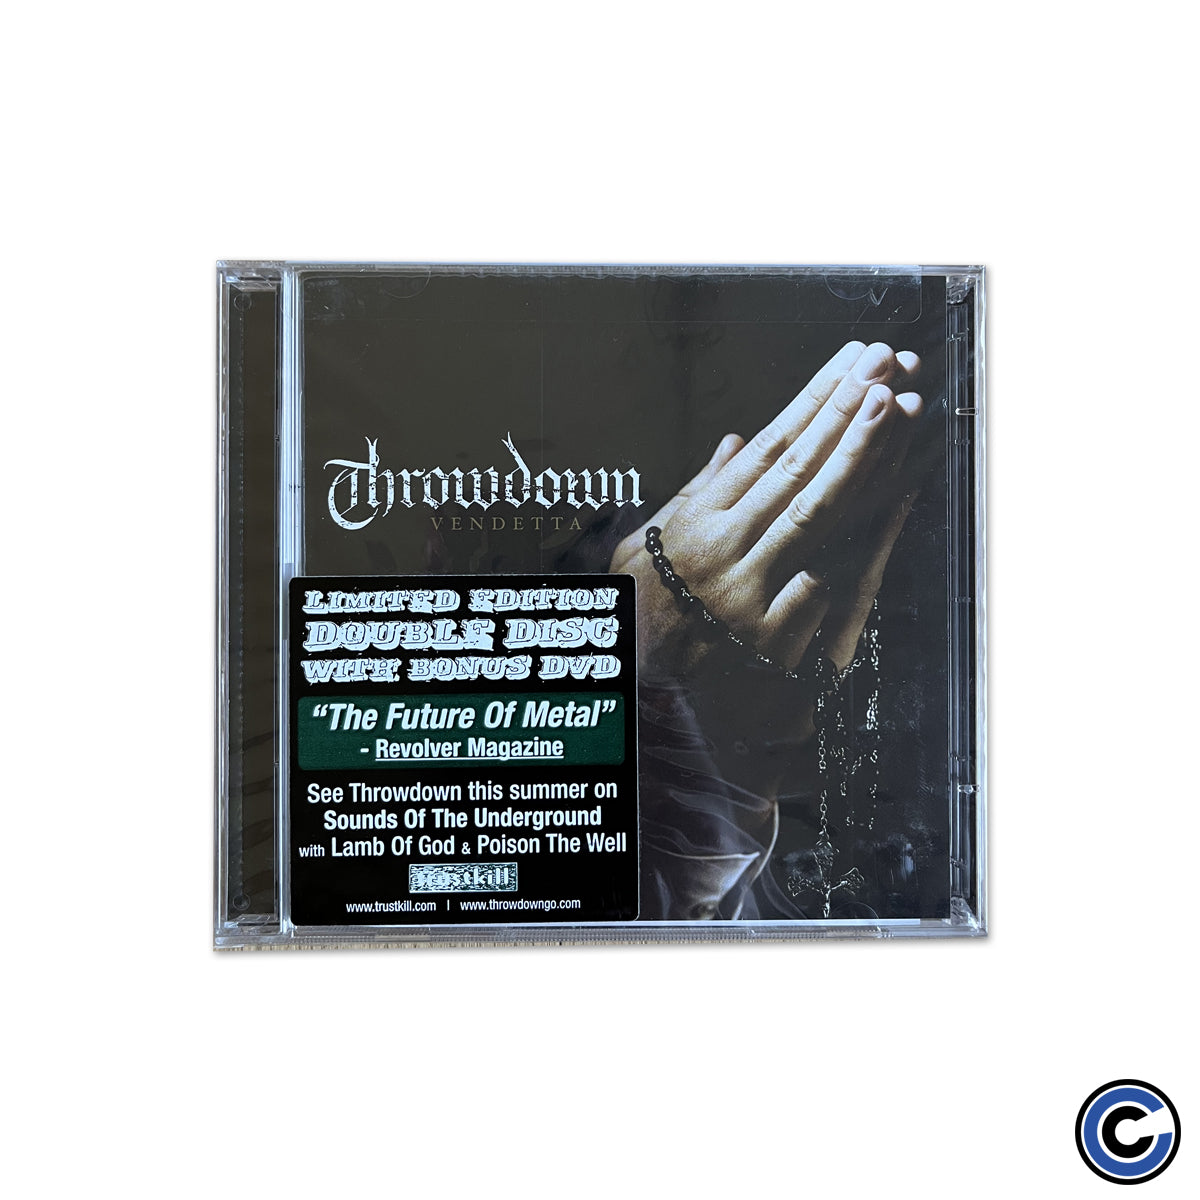 Throwdown "Vendetta" CD